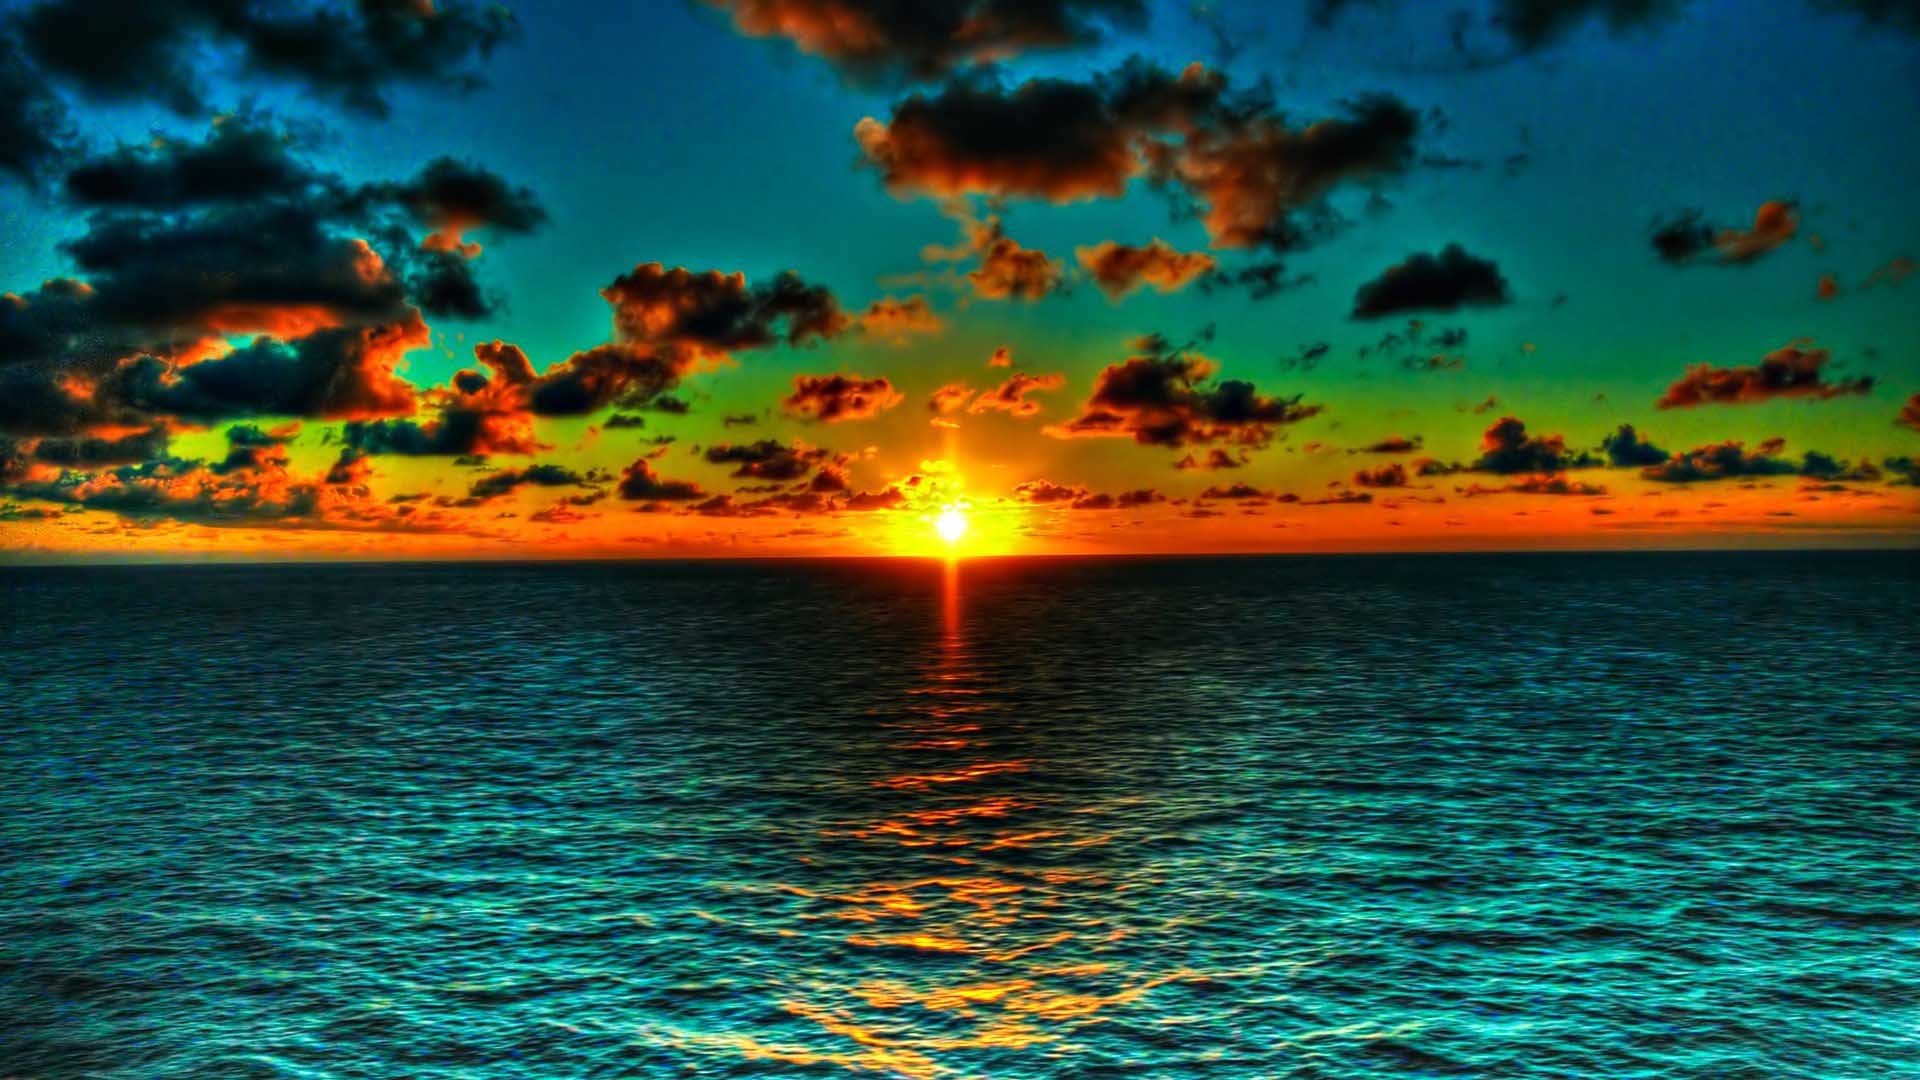 Ocean Sunset Desktop Wallpapers - HD Wallpapers Backgrounds of